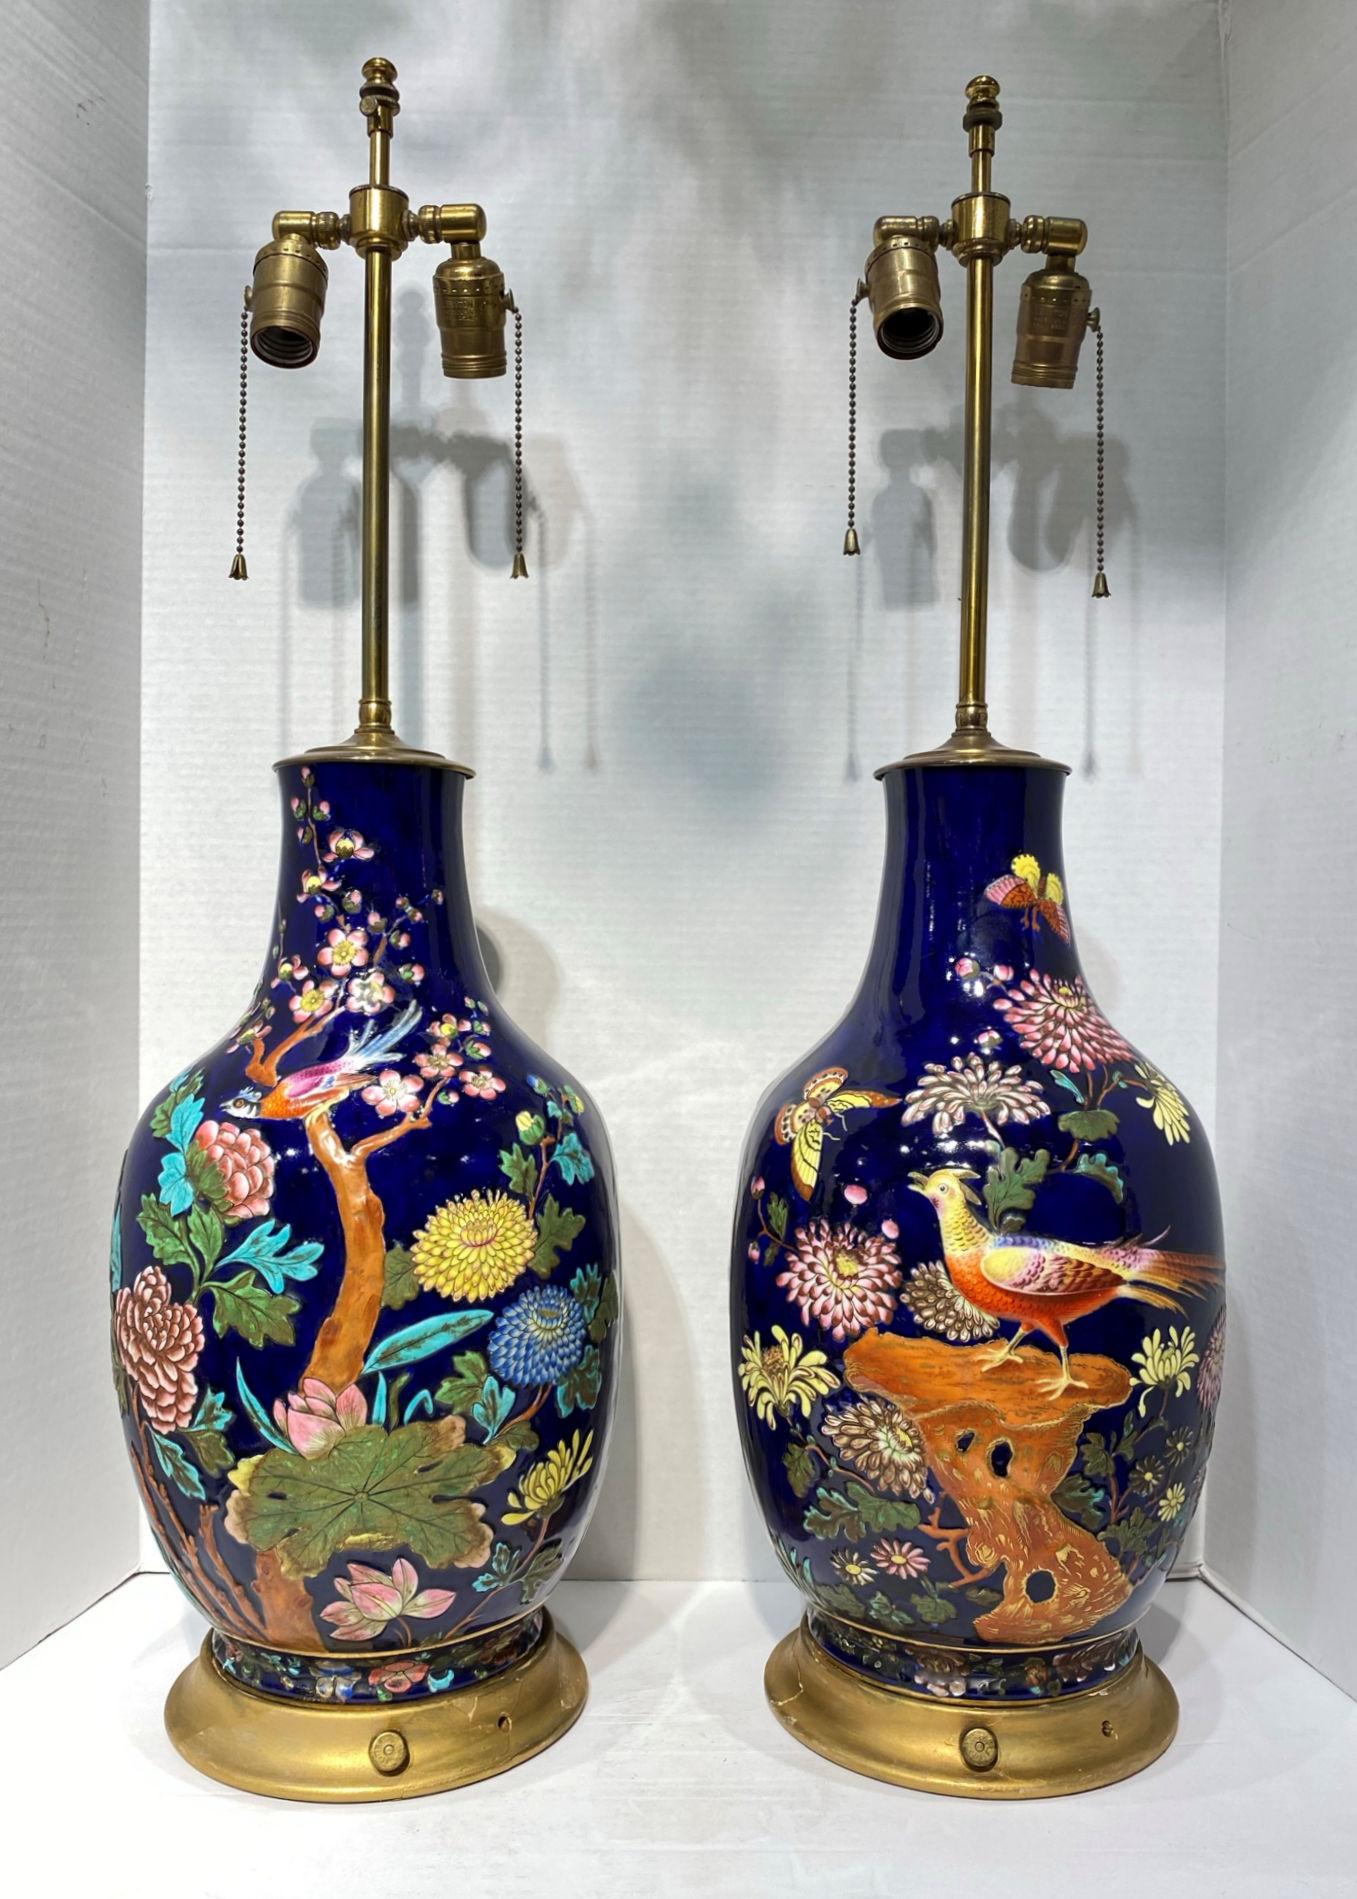 Paire de lampes de table en porcelaine émaillée colorée de la fin du XIXe siècle, avec des motifs d'oiseaux, de fleurs et de papillons.
Les décorations sont en relief et bidimensionnelles. Peinture d'une très belle qualité.
Les vases en porcelaine